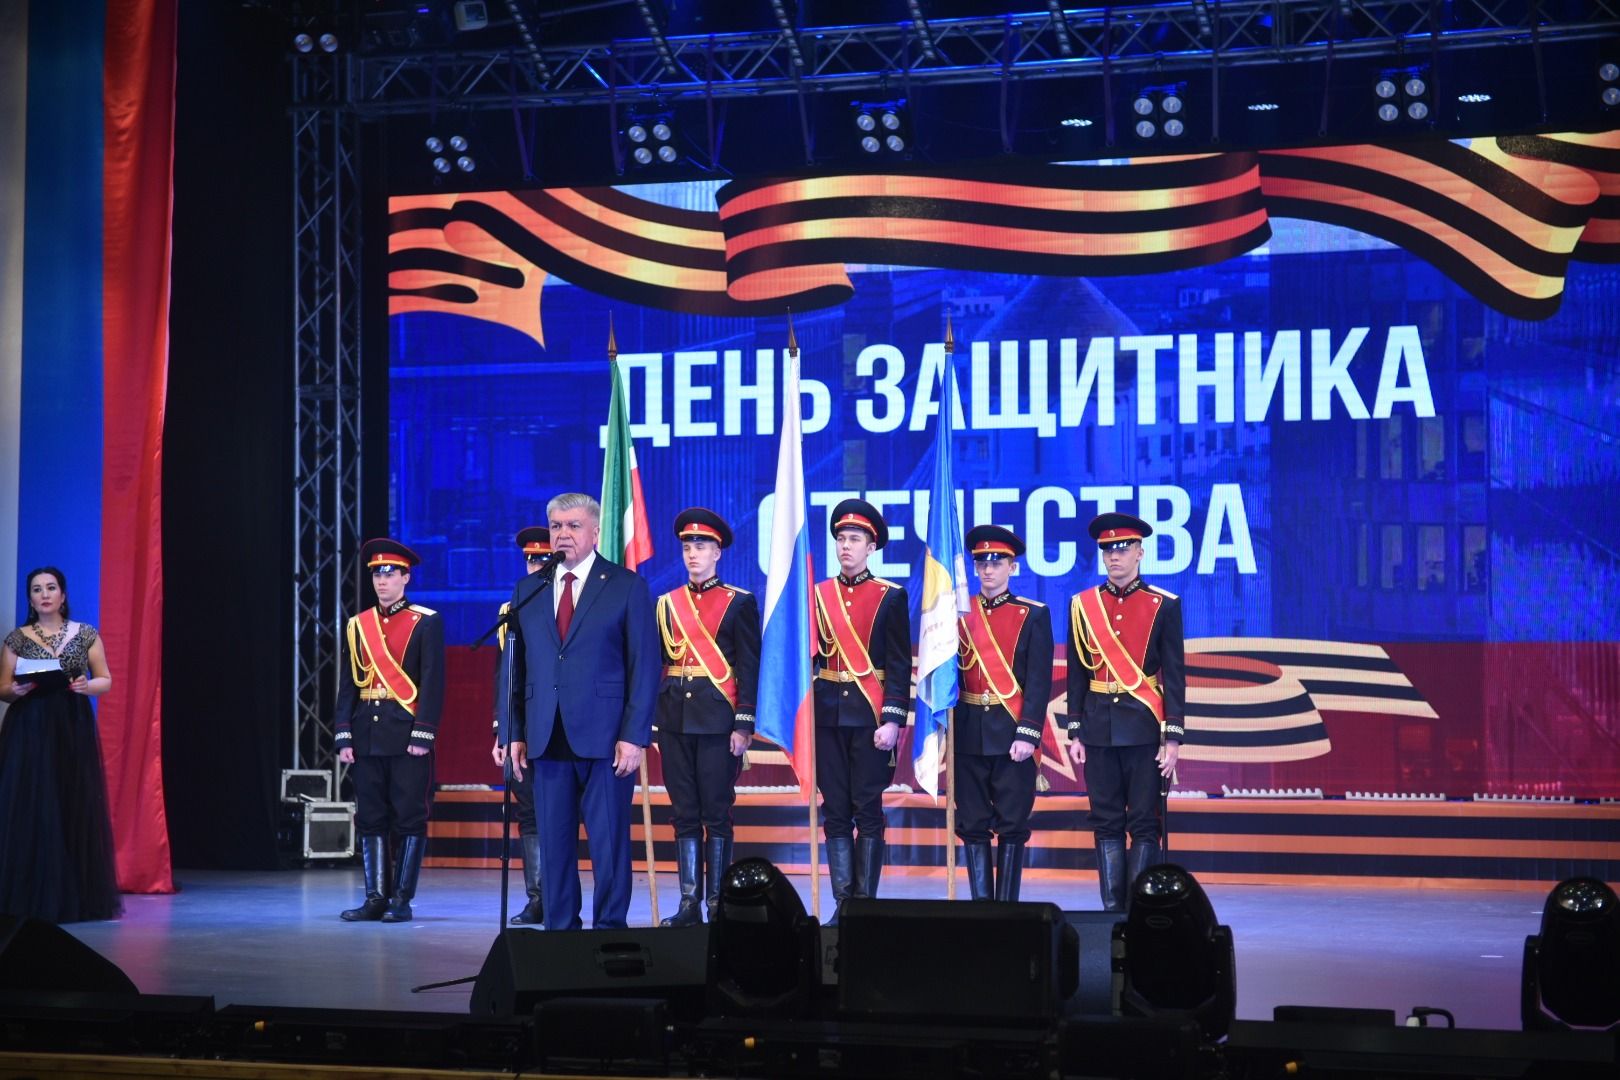 Наиль Магдеев поздравил челнинцев с Днем защитника Отечества